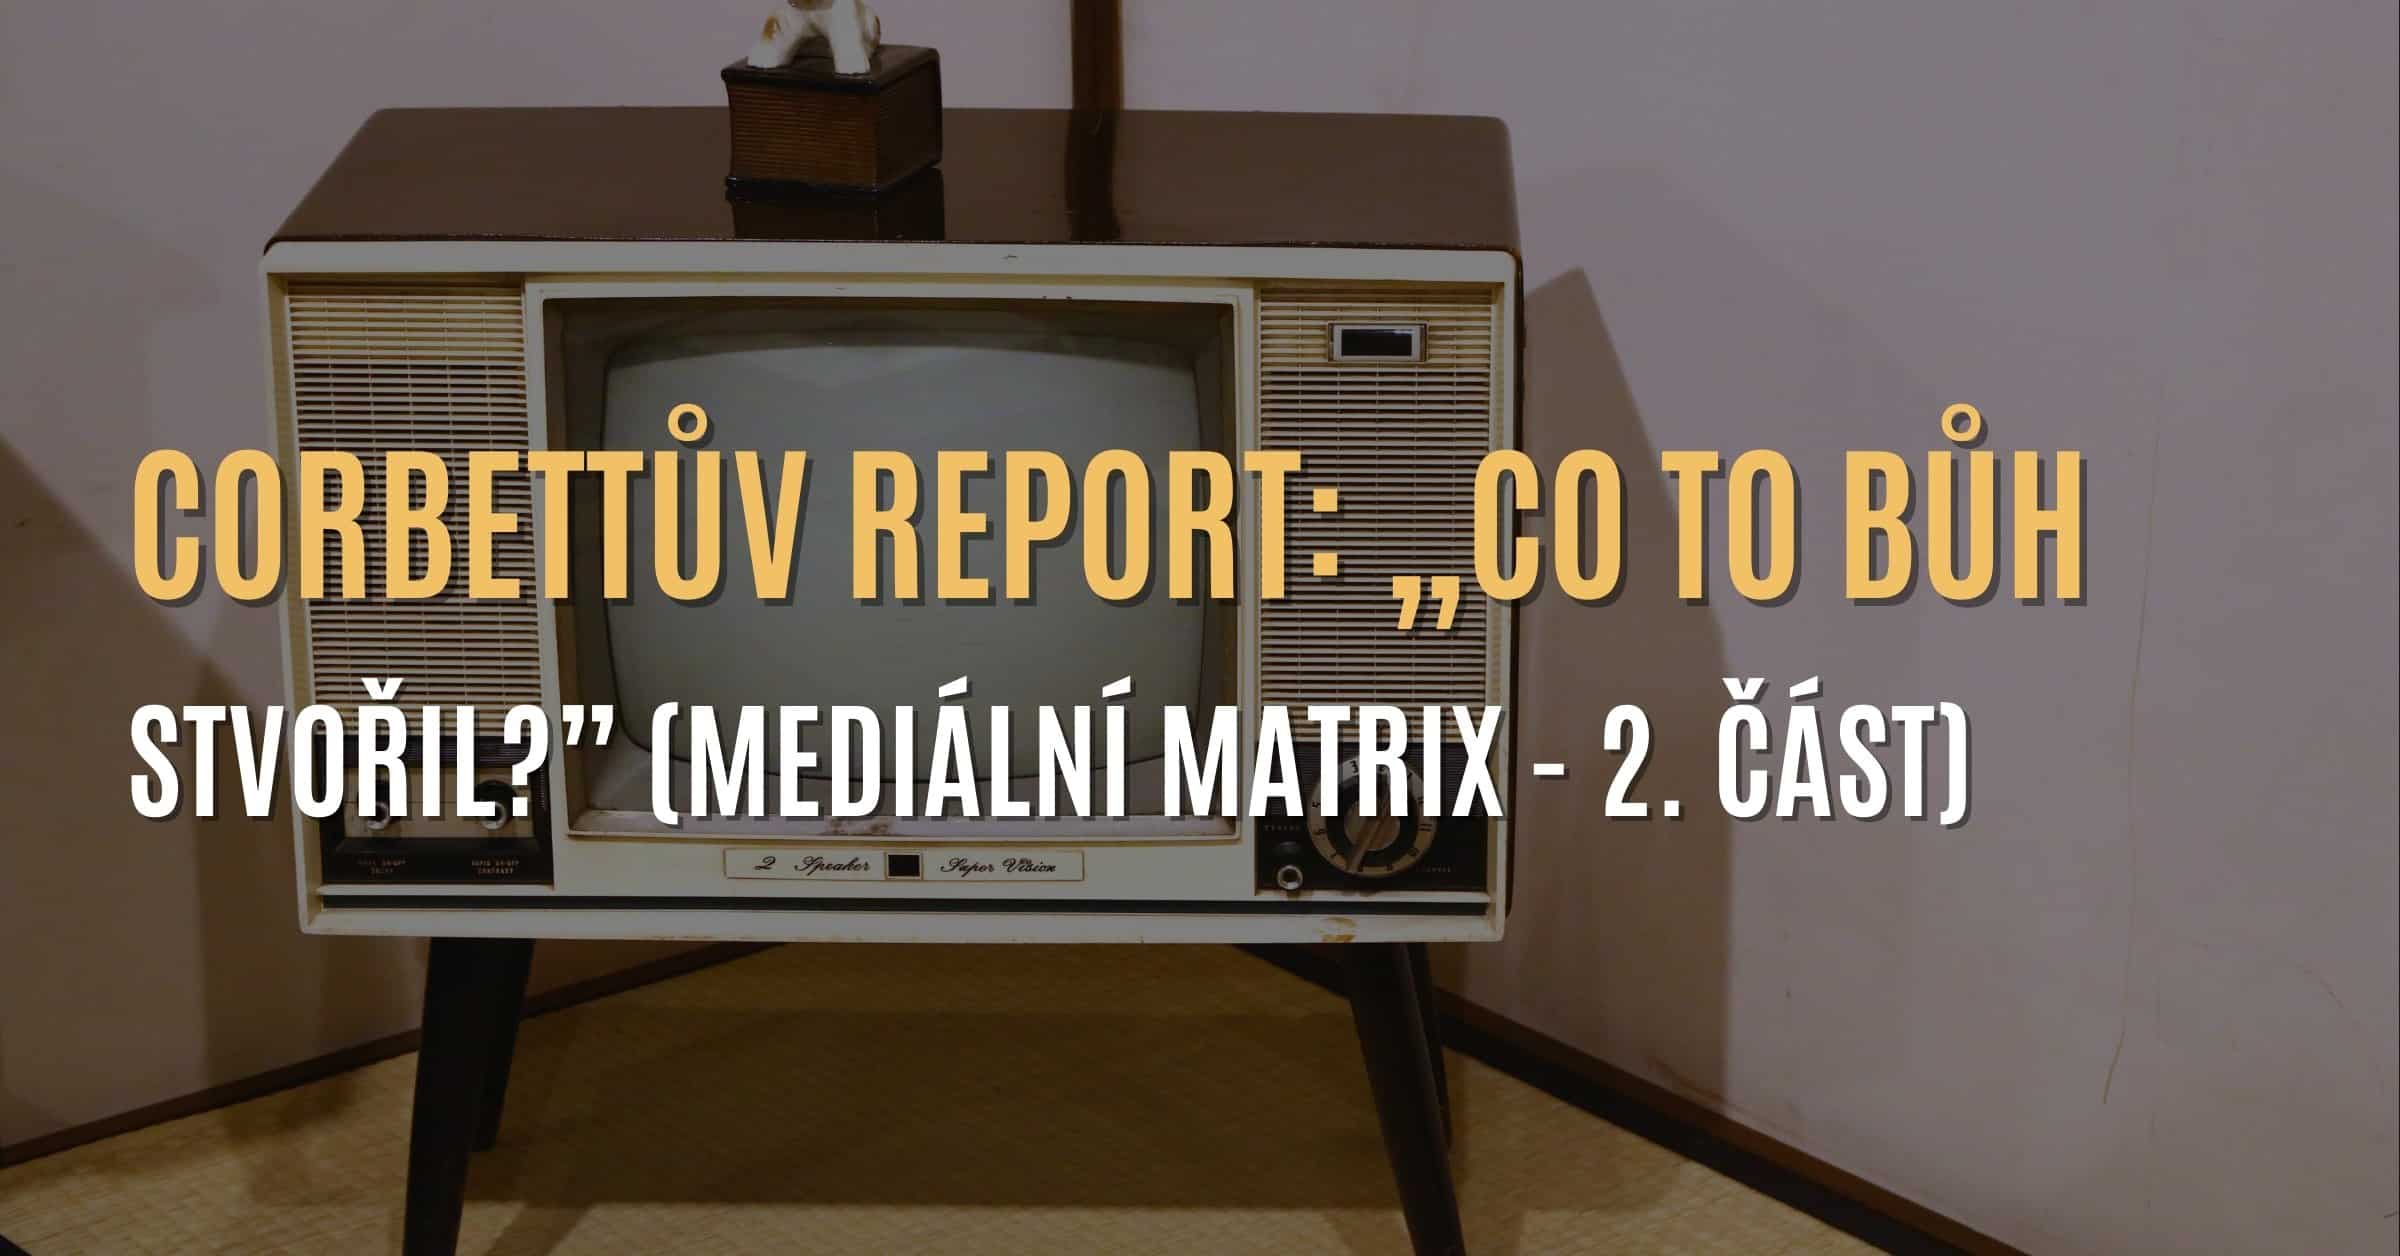 Corbettův report: Televize a rozhlas – zbraň kontroly nasazená proti lidem? (Mediální matrix – 2. část) 